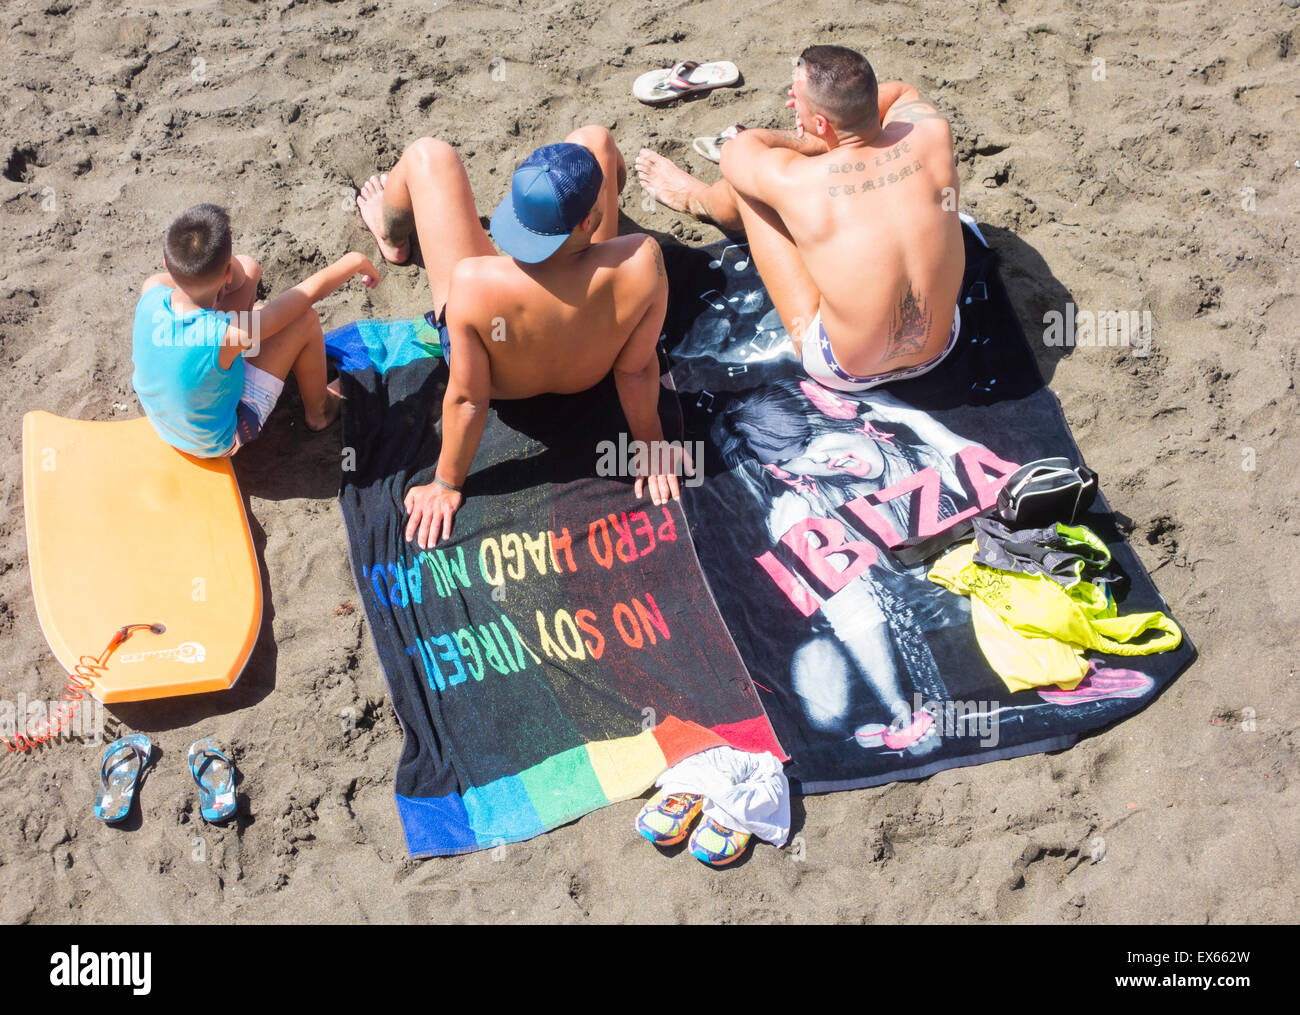 Zwei Männer und jungen am Strand, einem auf Ibiza Handtuch sitzen. Stockfoto